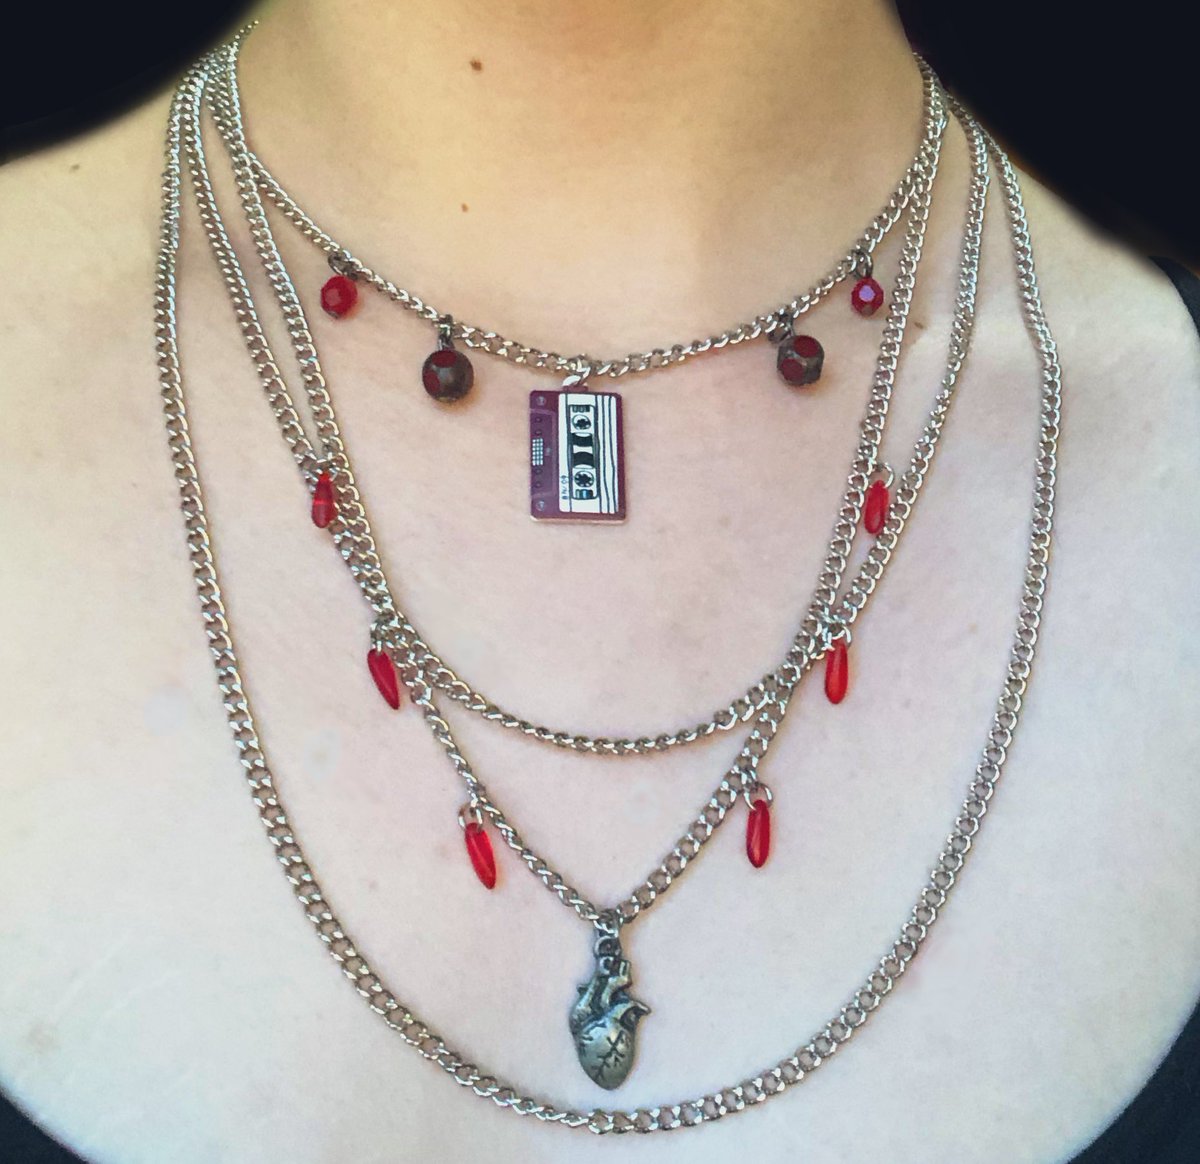 made a genloss inspired necklace!!
#generationloss #ranboofanart